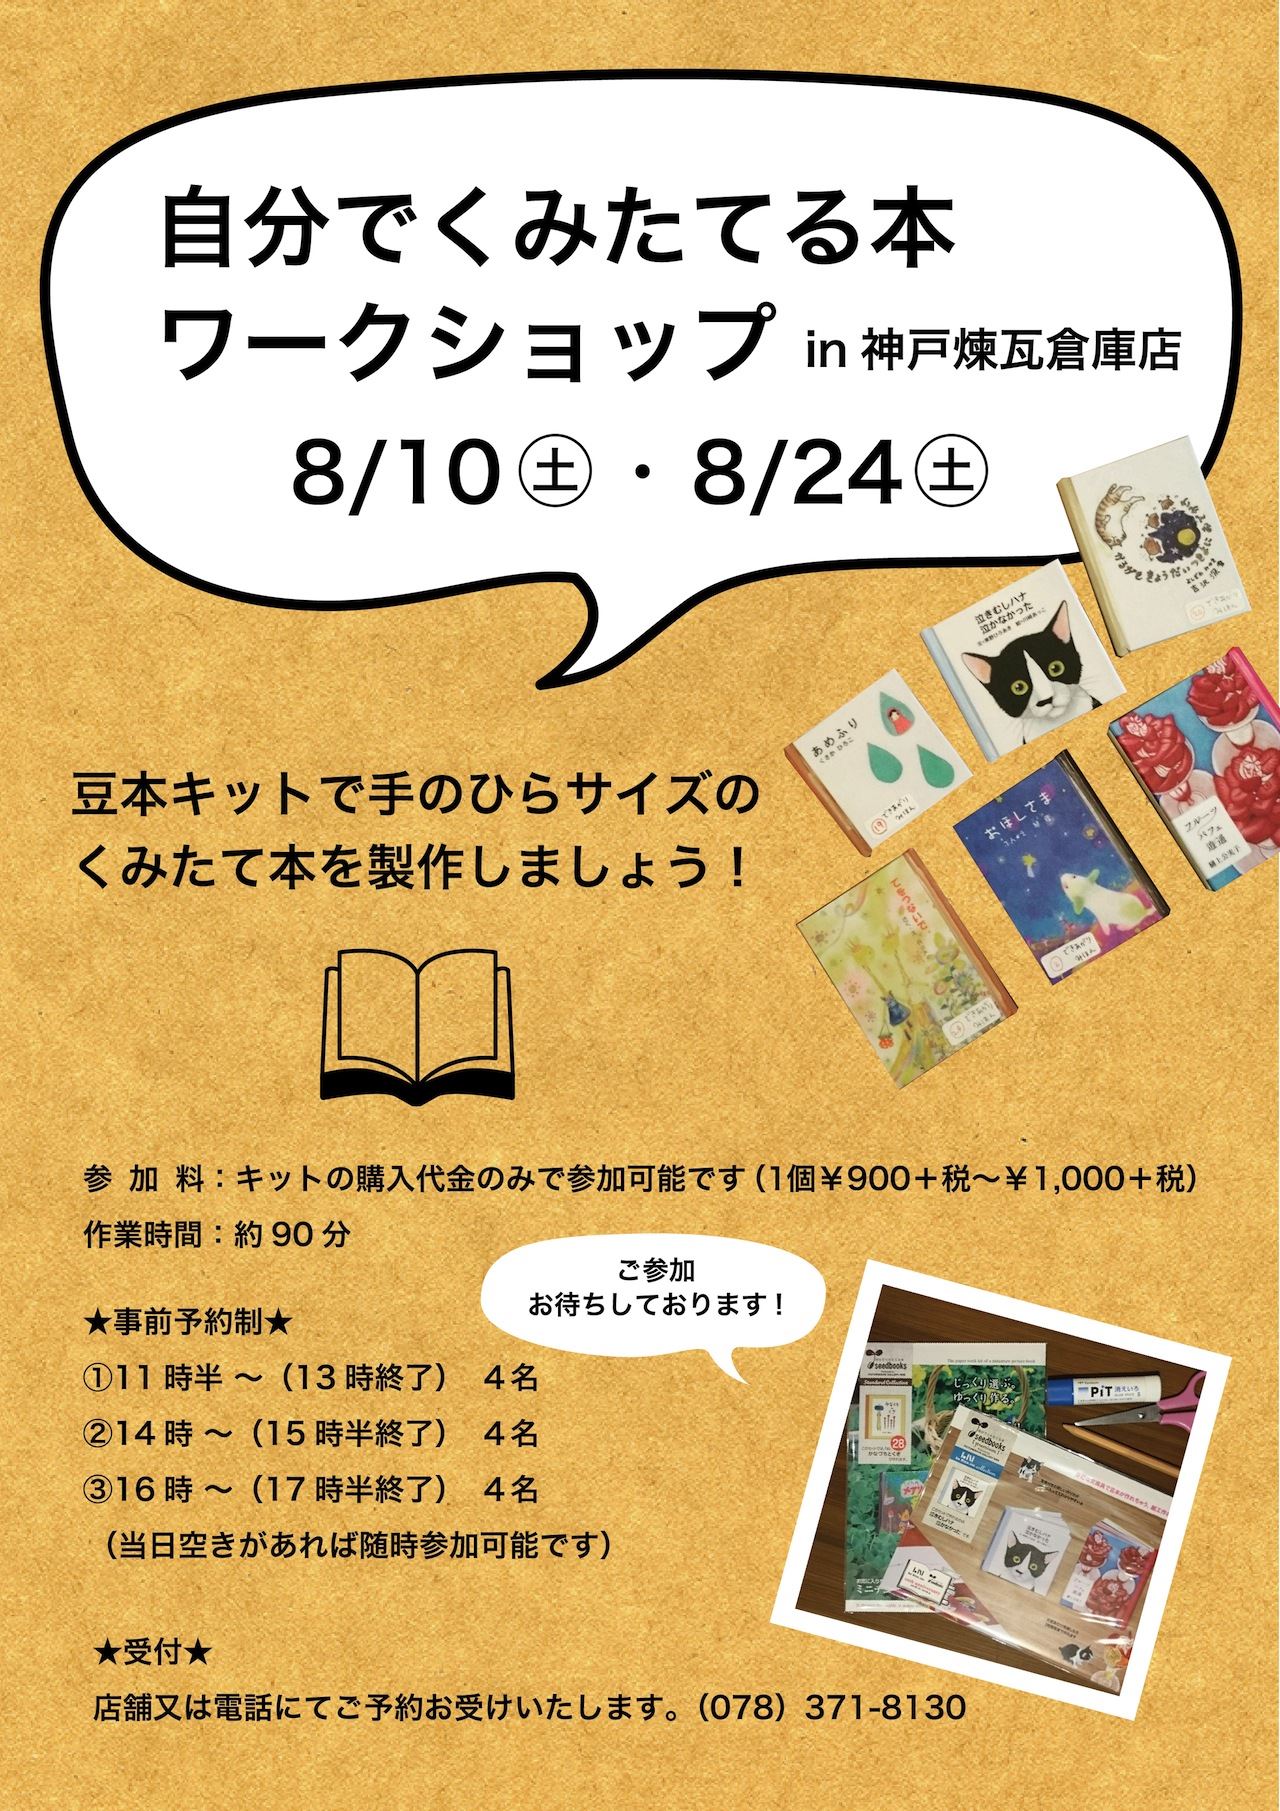 【神戸煉瓦倉庫店】自分でくみたてる本 『seedbooks』夏休みの思い出に・記念にいかがでしょうか？